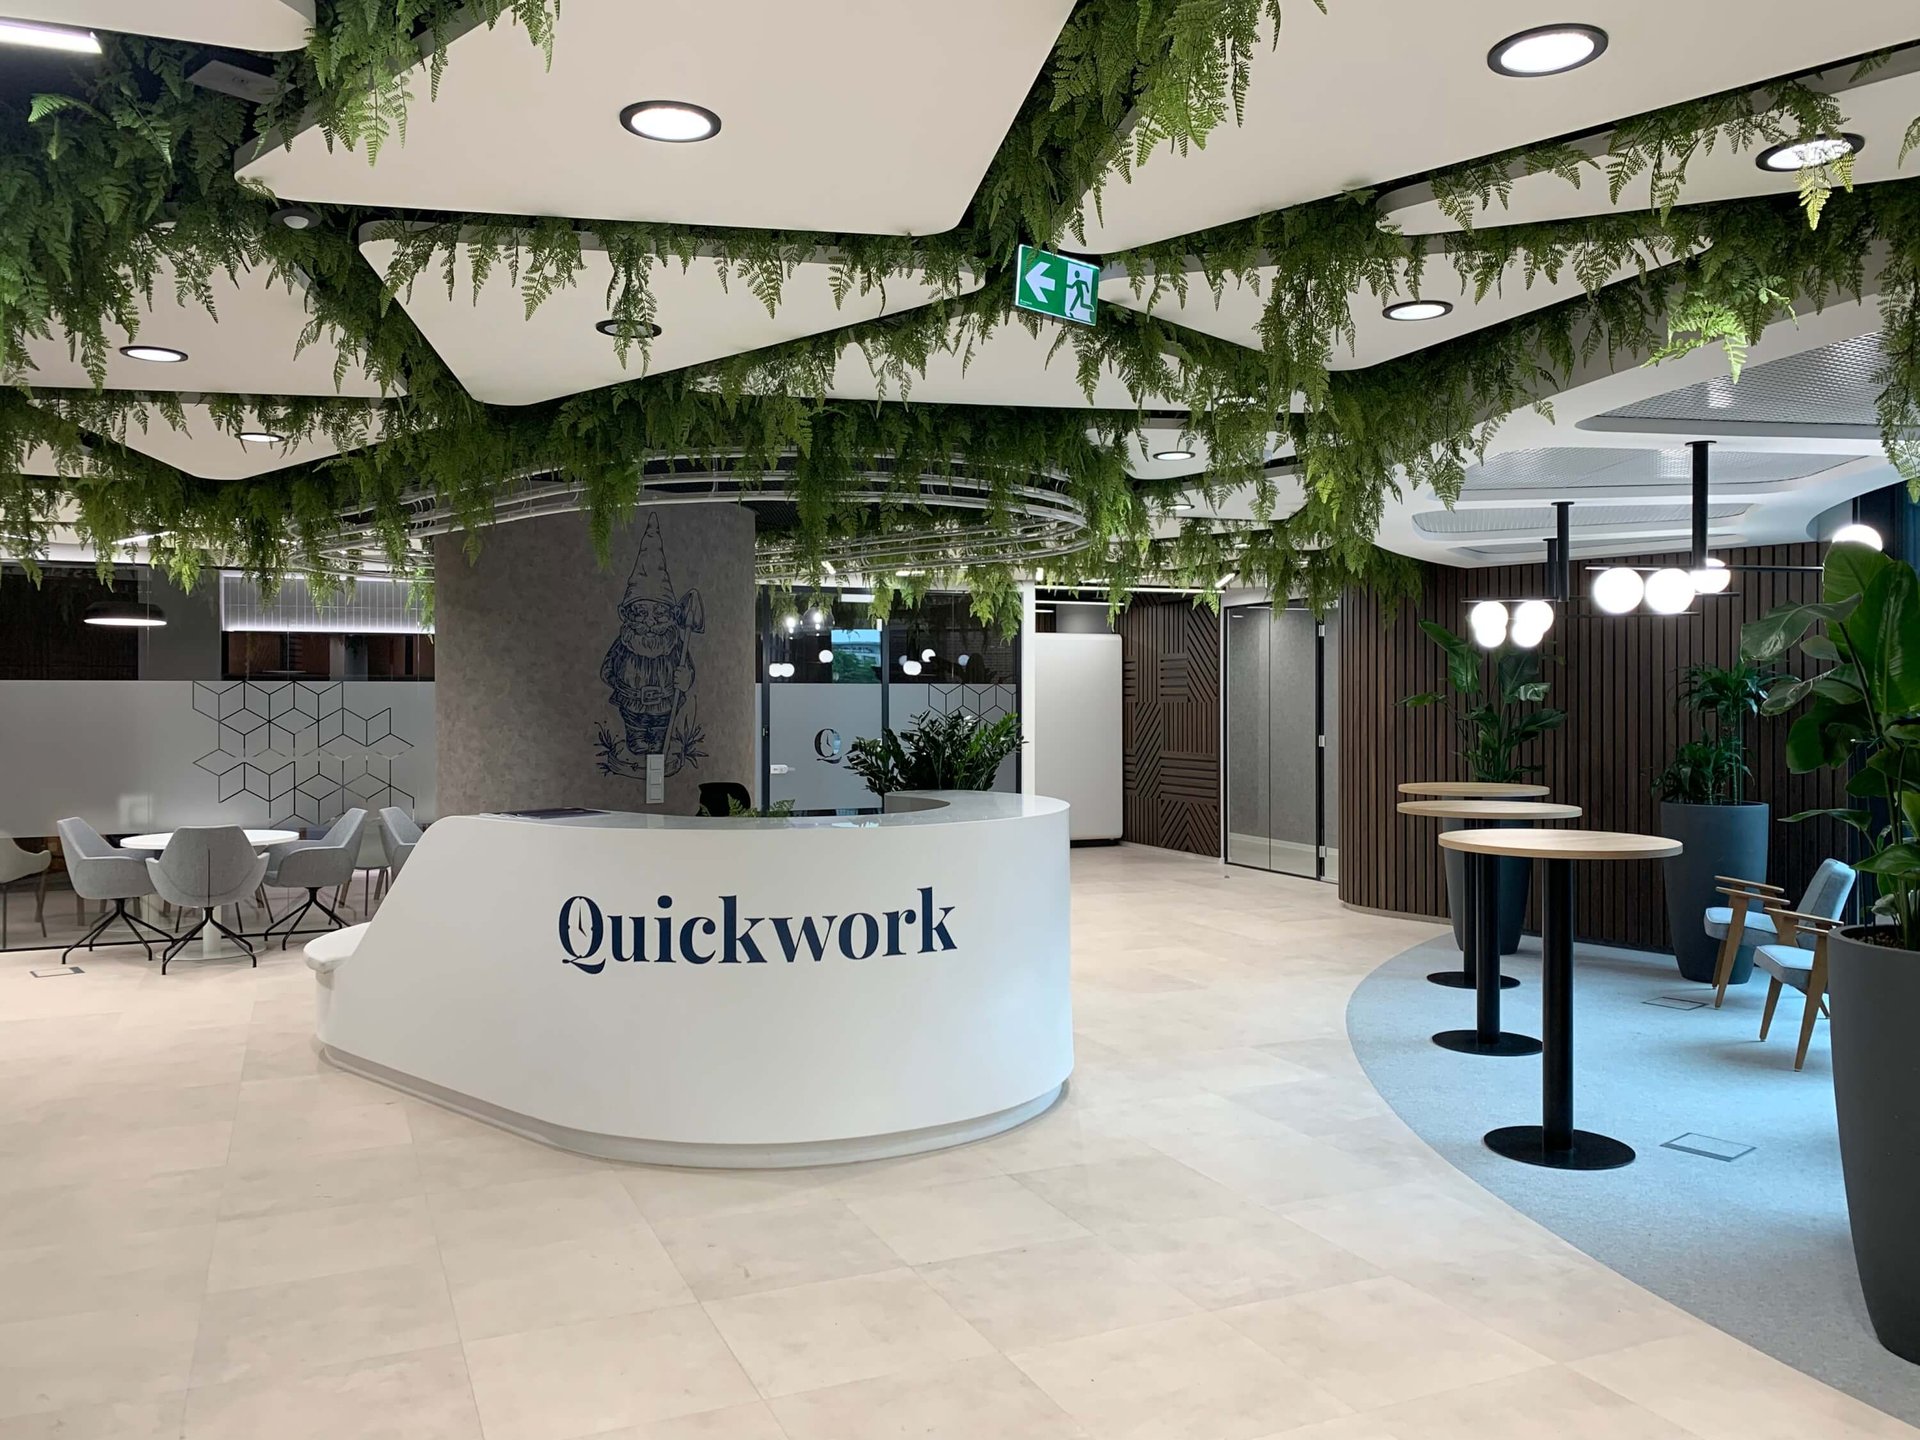 Interior of Quickwork Quorum